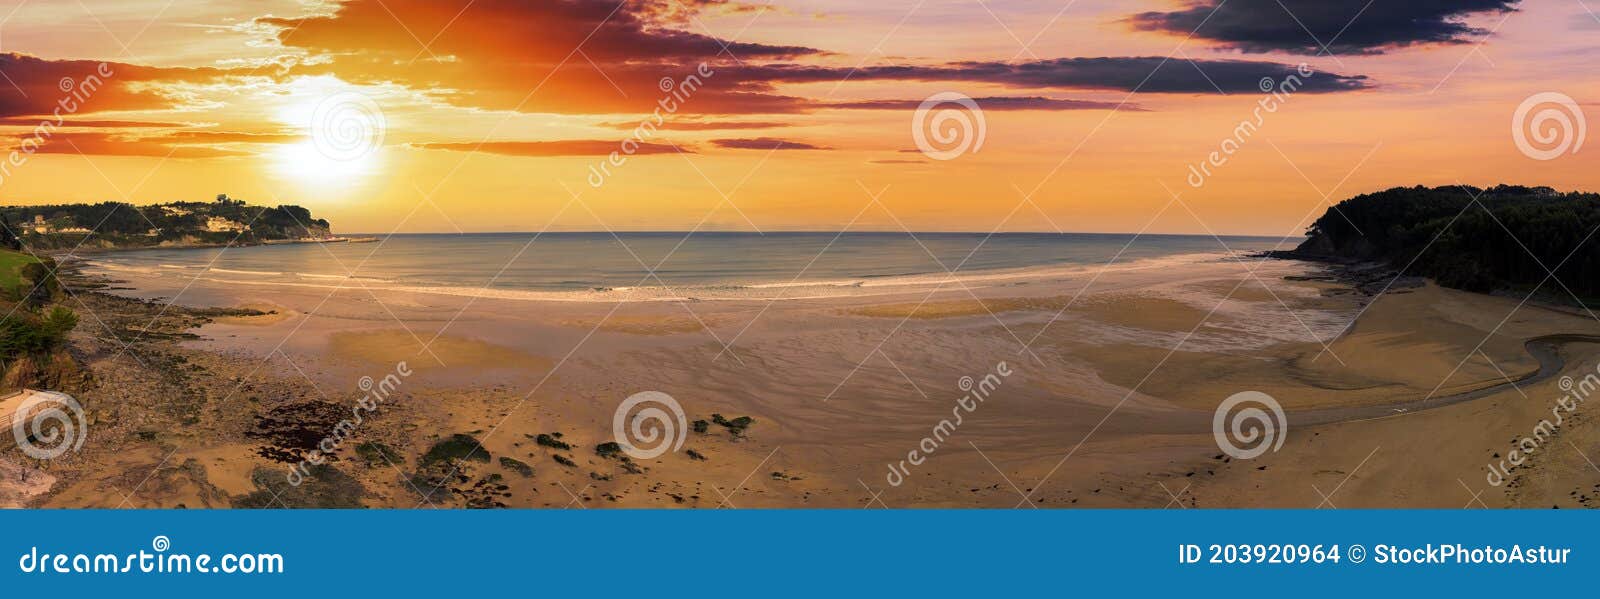 beach, playa de la griega in asturias, spain